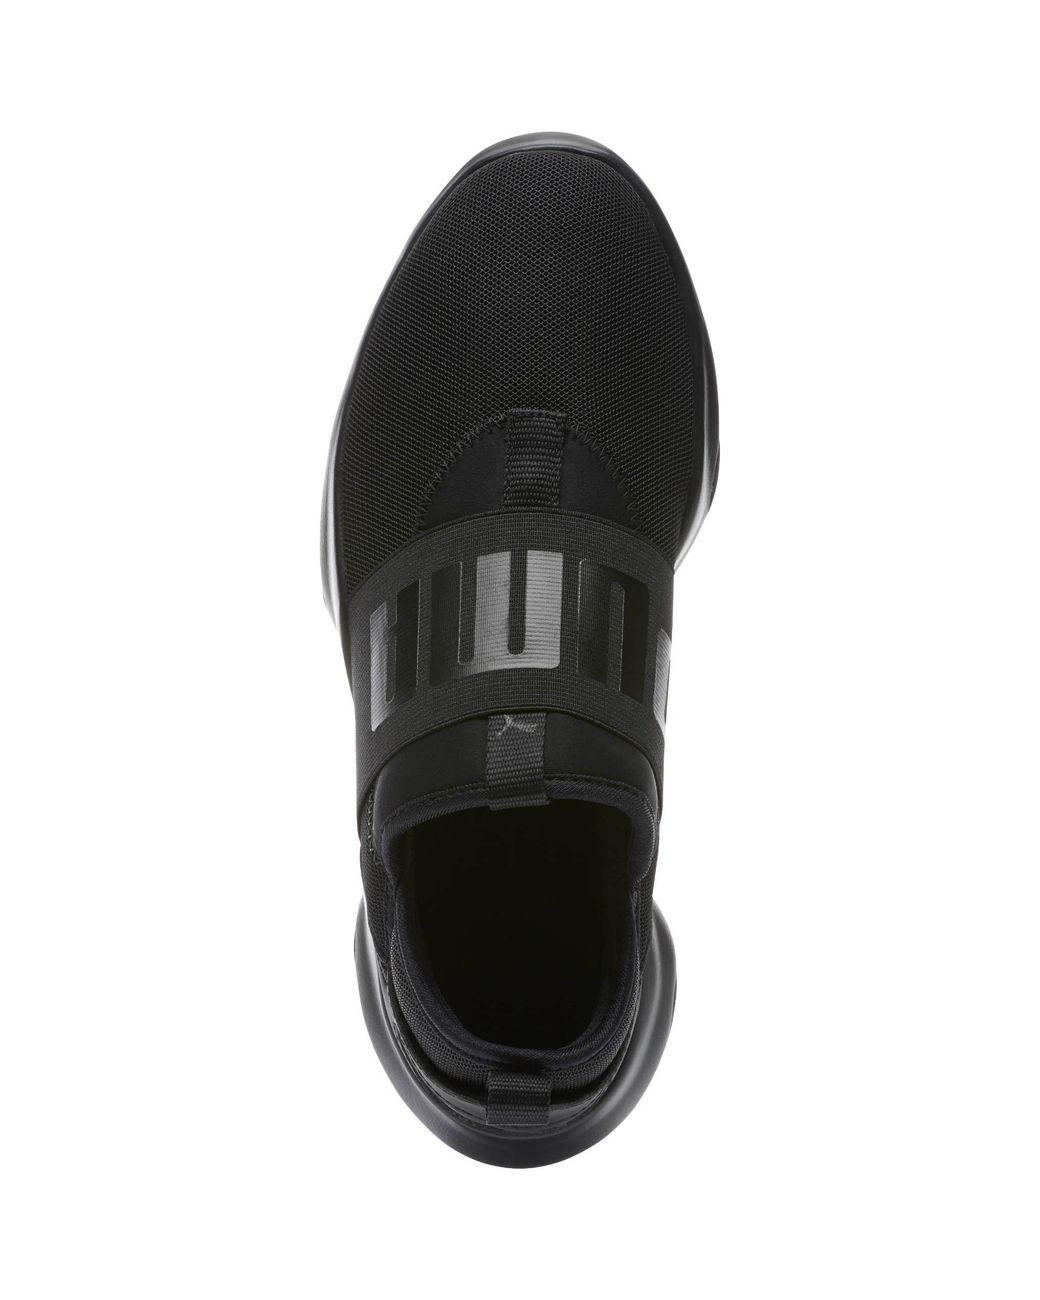 PUMA Rubber Dare Women's Slip-on Sneakers in Black | Lyst